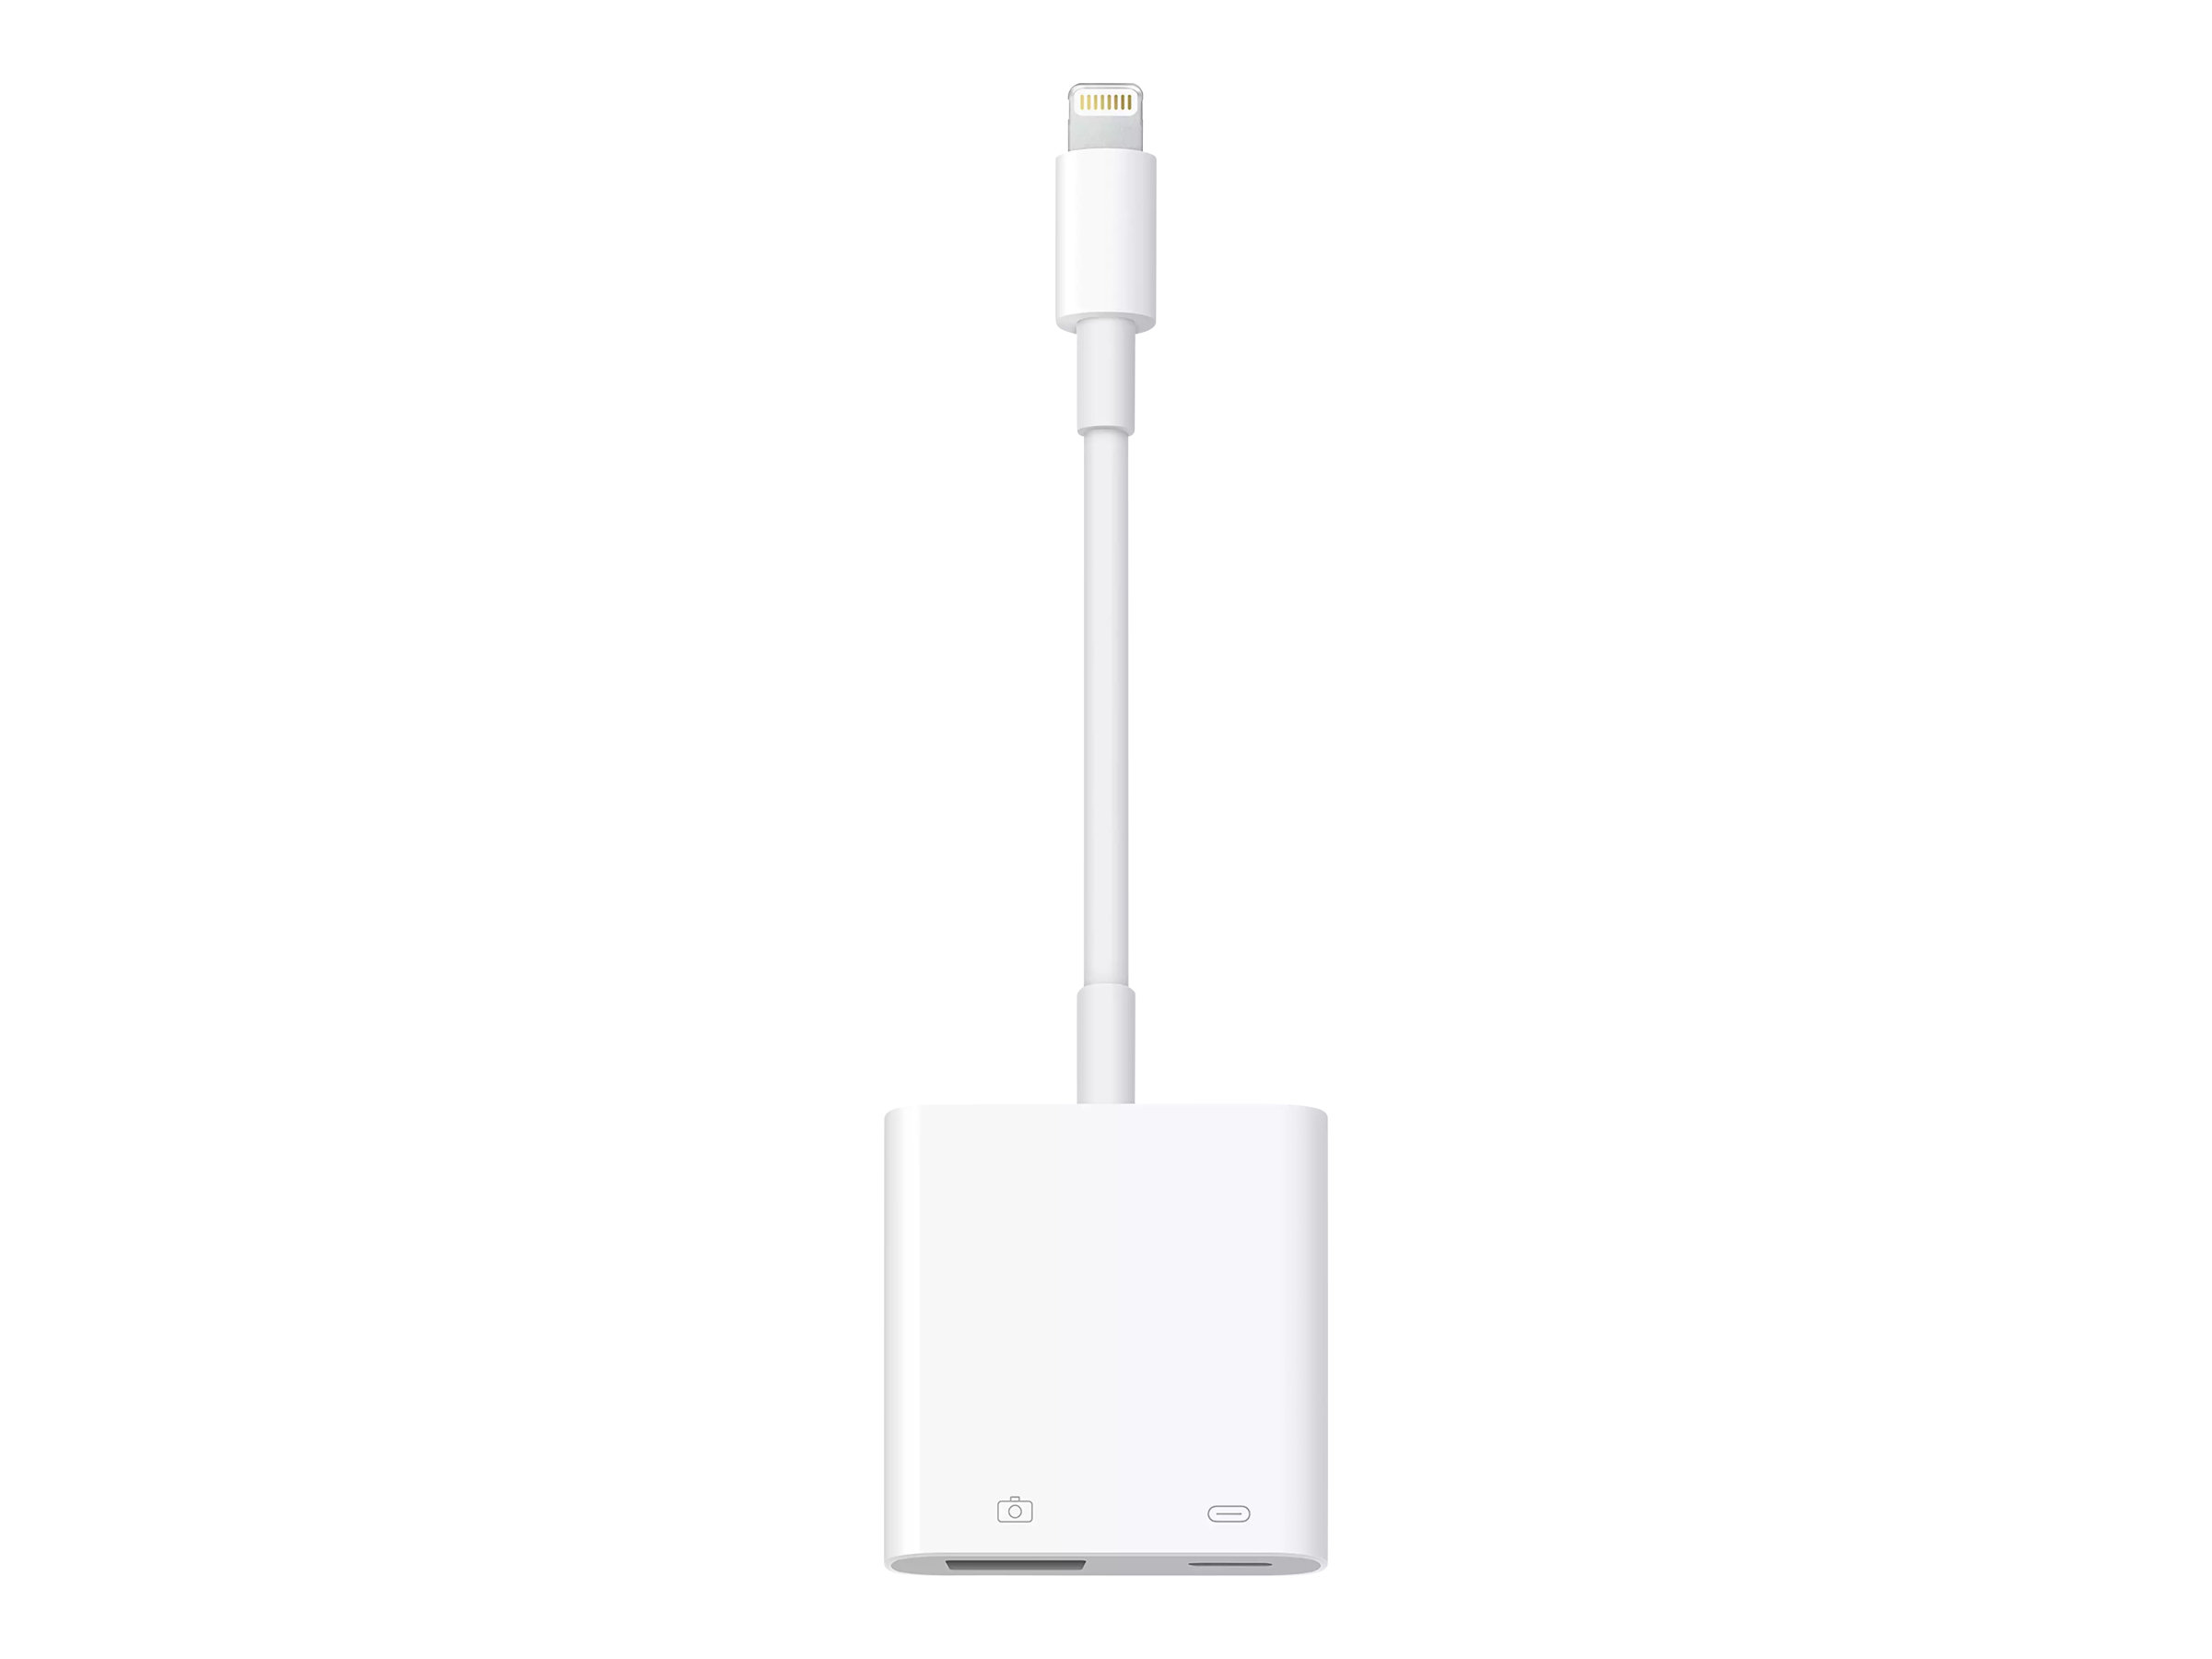 Apple Lightning to USB 3 Camera Adapter - Lightning Adapter - Lightning (M)